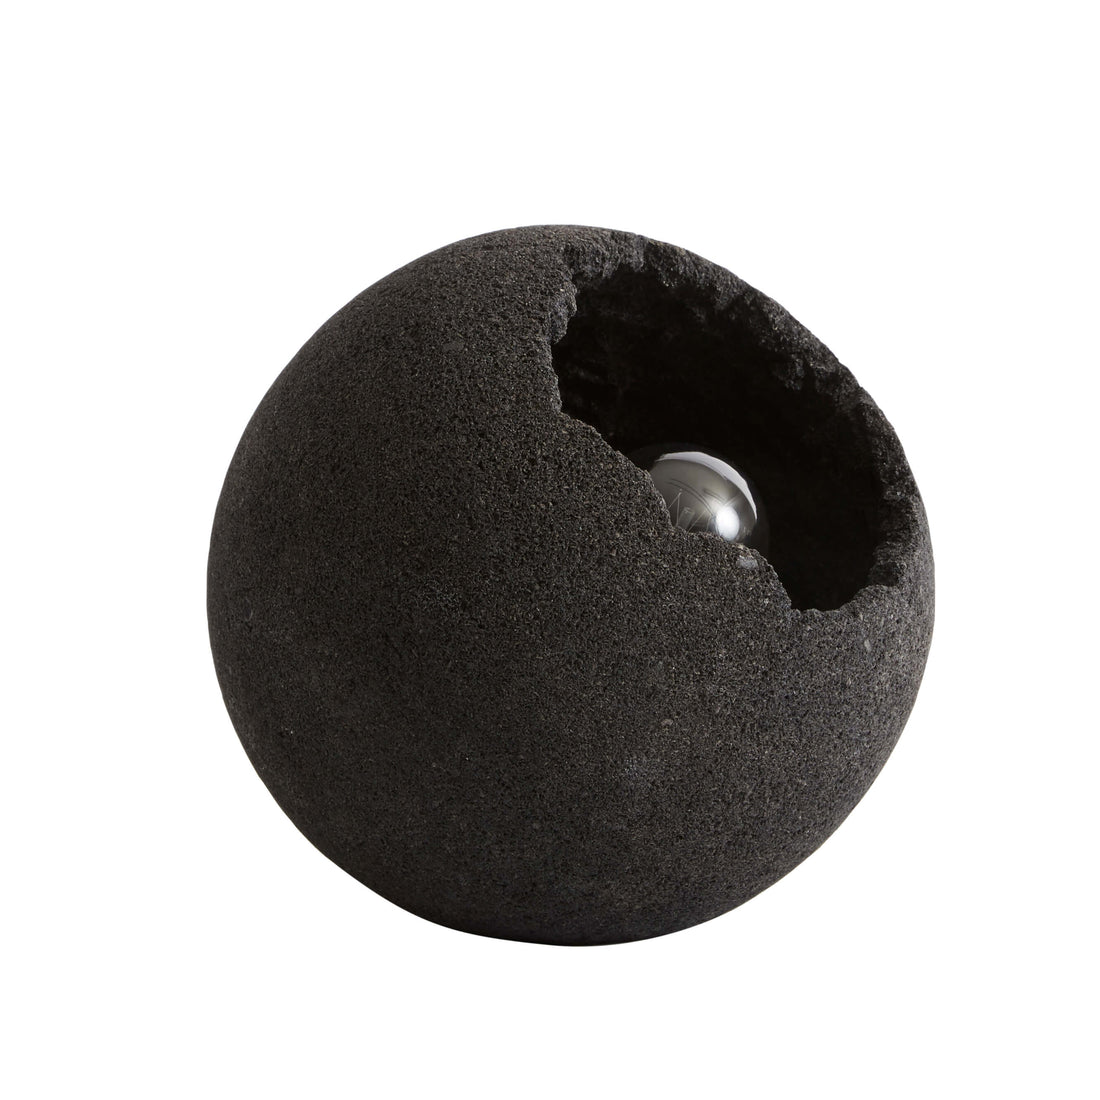 MUUBS - Gulvlampe Crust - Mat sort Lava sten - Ø22xH21 cm